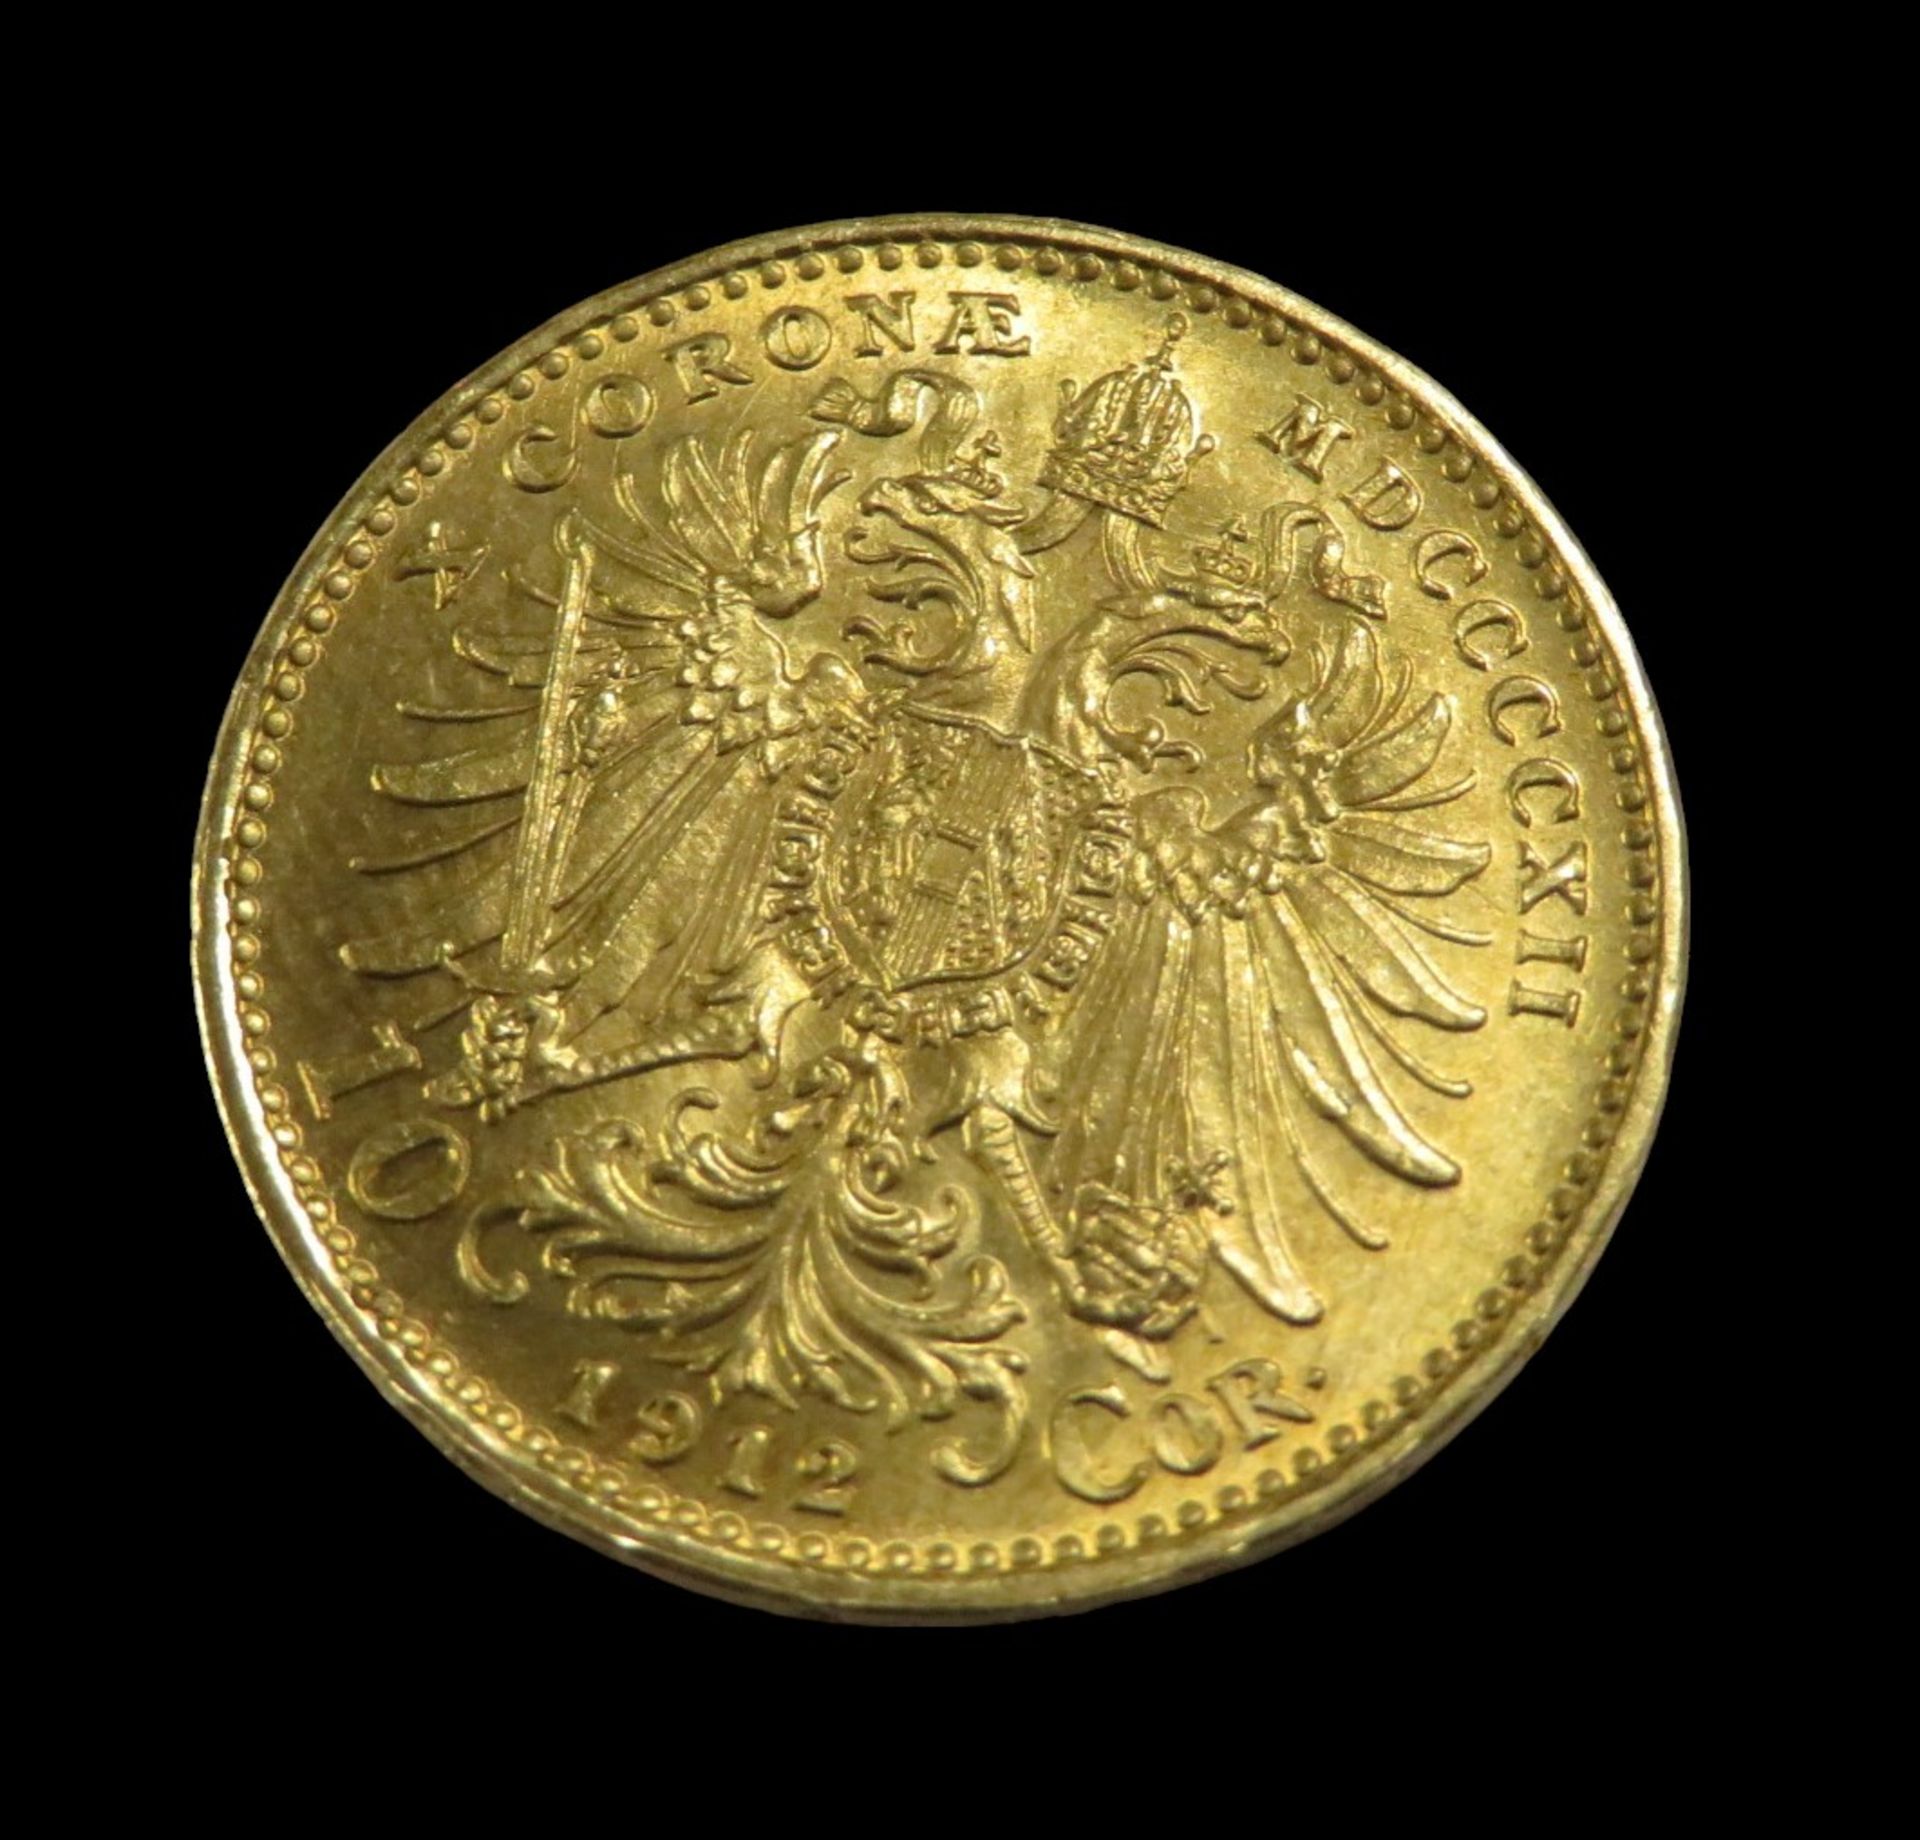 Goldmünze, Österreich, 10 Kronen, Franz Joseph I, 1912, Gold 900/000, 3,3 g, d 1,9 cm. - Bild 2 aus 2